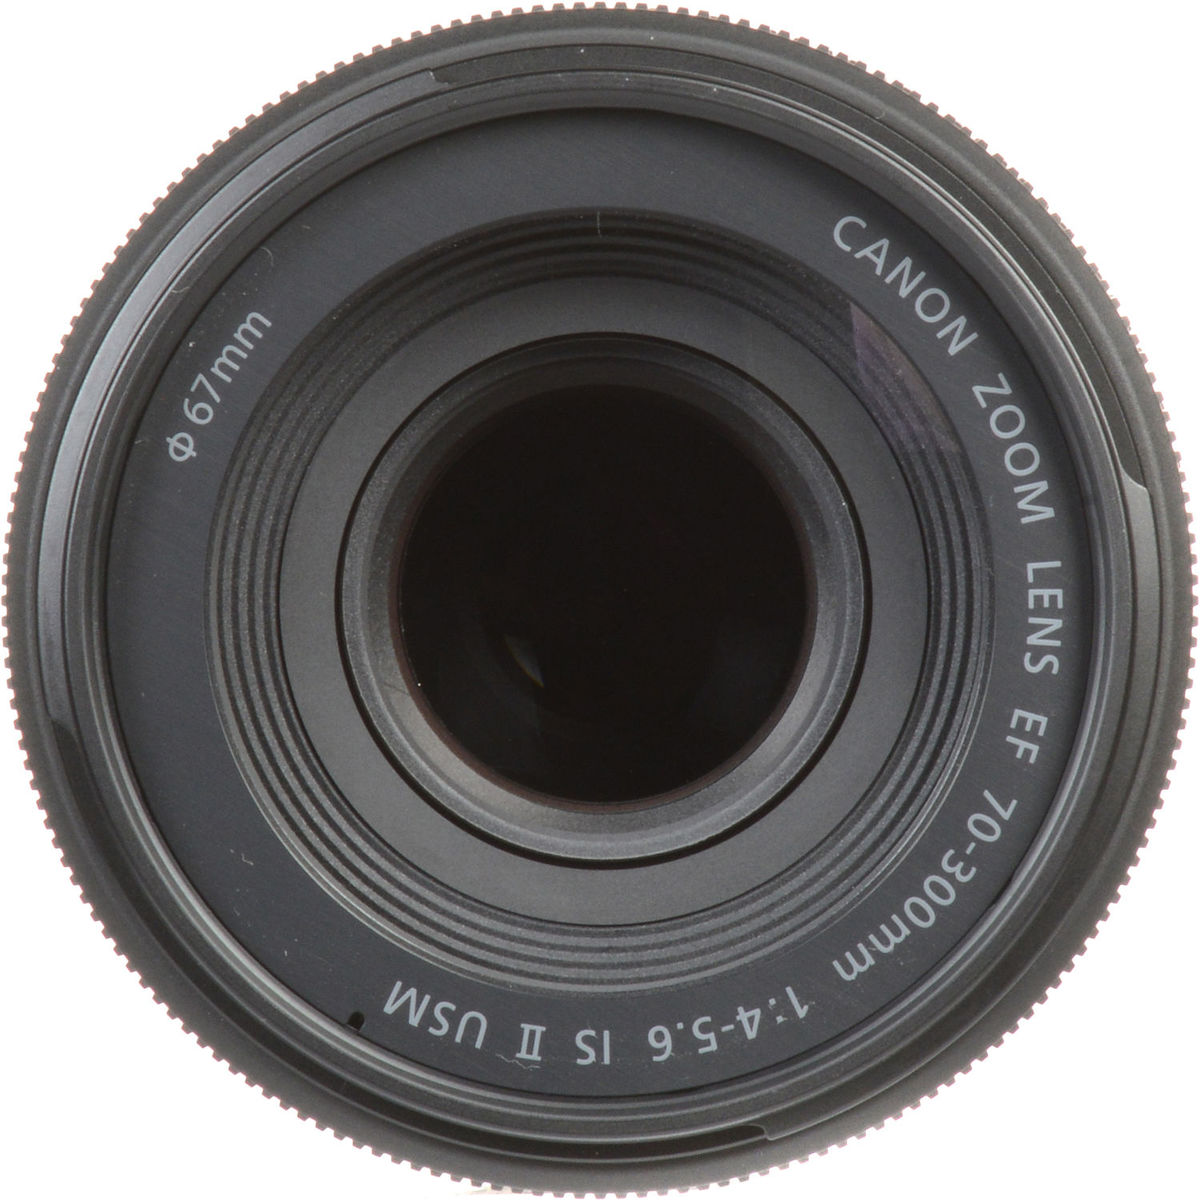 4. Canon EF 70-300 F4-5.6 IS II USM